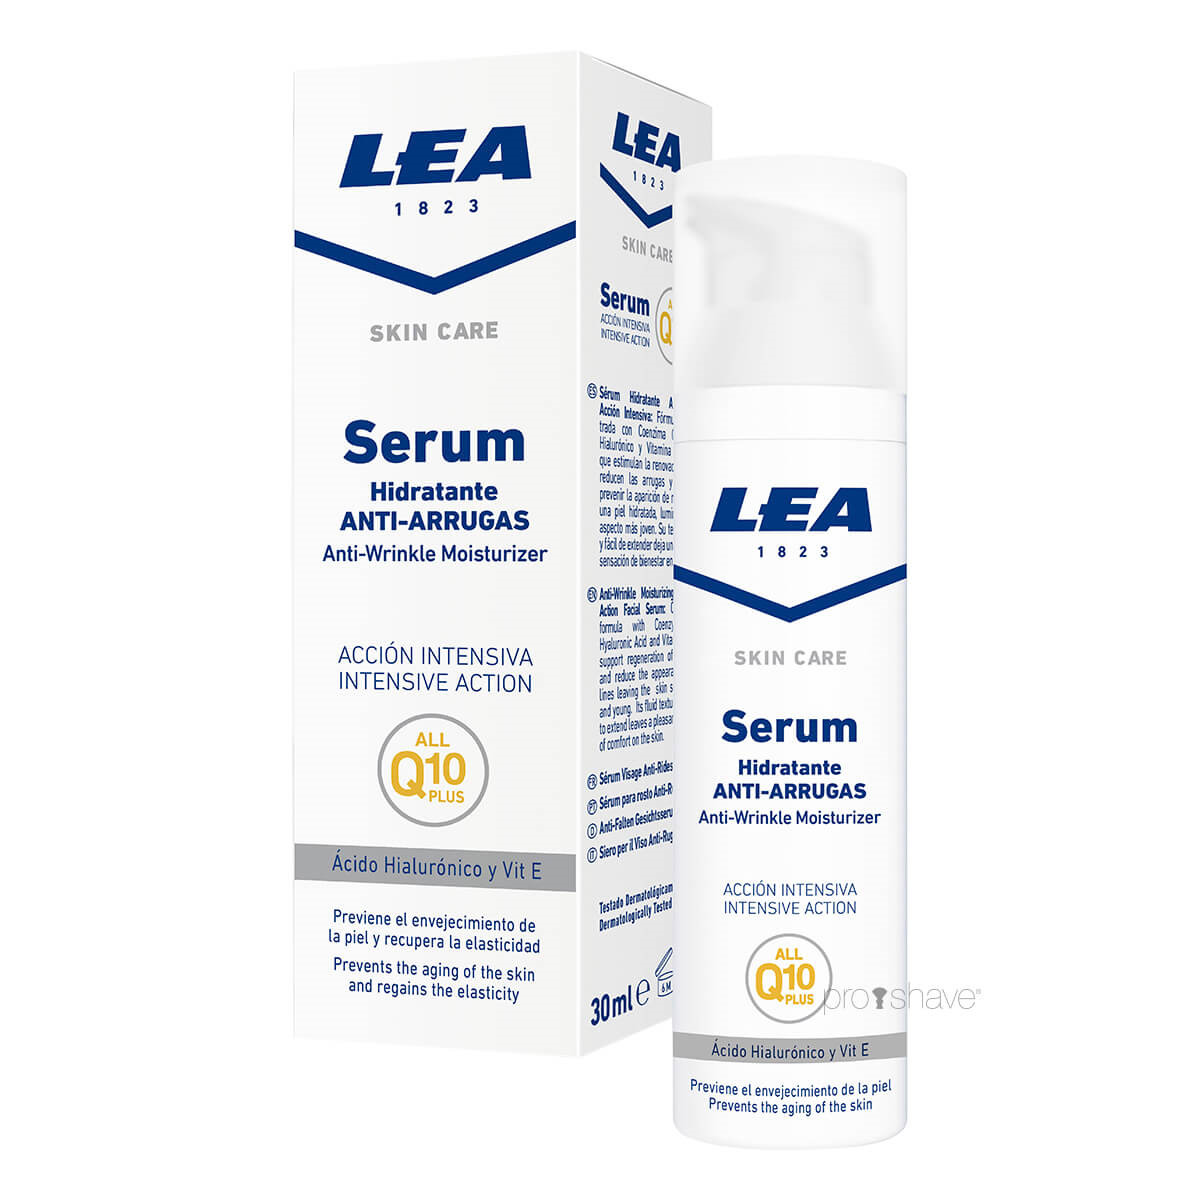 Se LEA Anti-Wrinkle Moisturizer Serum, Q 10 Plus, 30 ml. hos Proshave